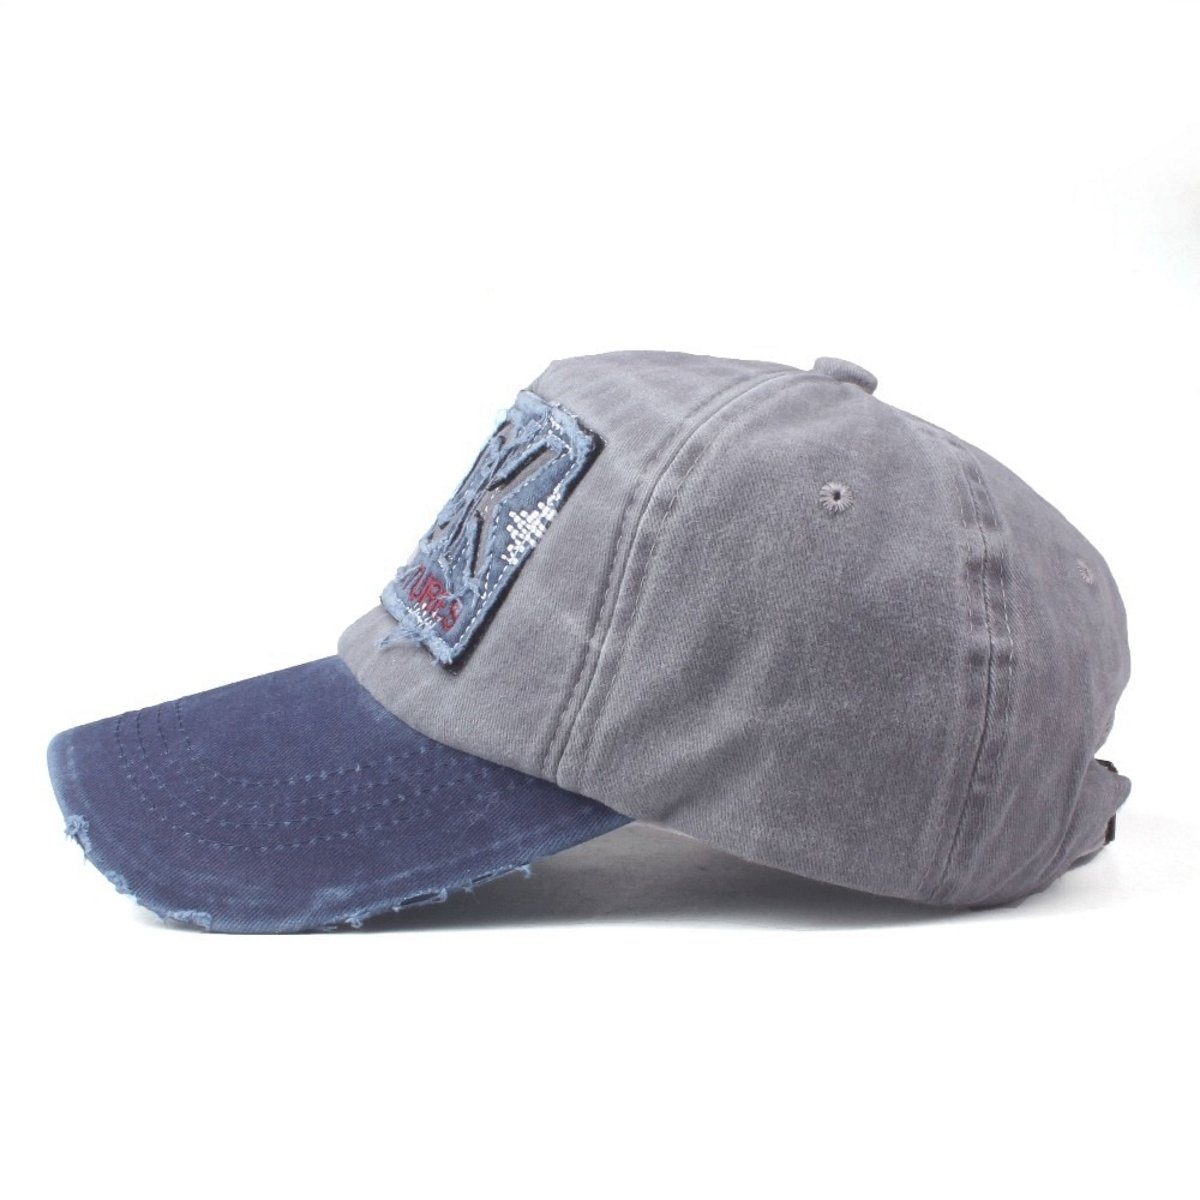 Sporty Baseball Cap Rock blau Belüftungslöchern Look College Cap Vintage Used mit Basecap Kappe